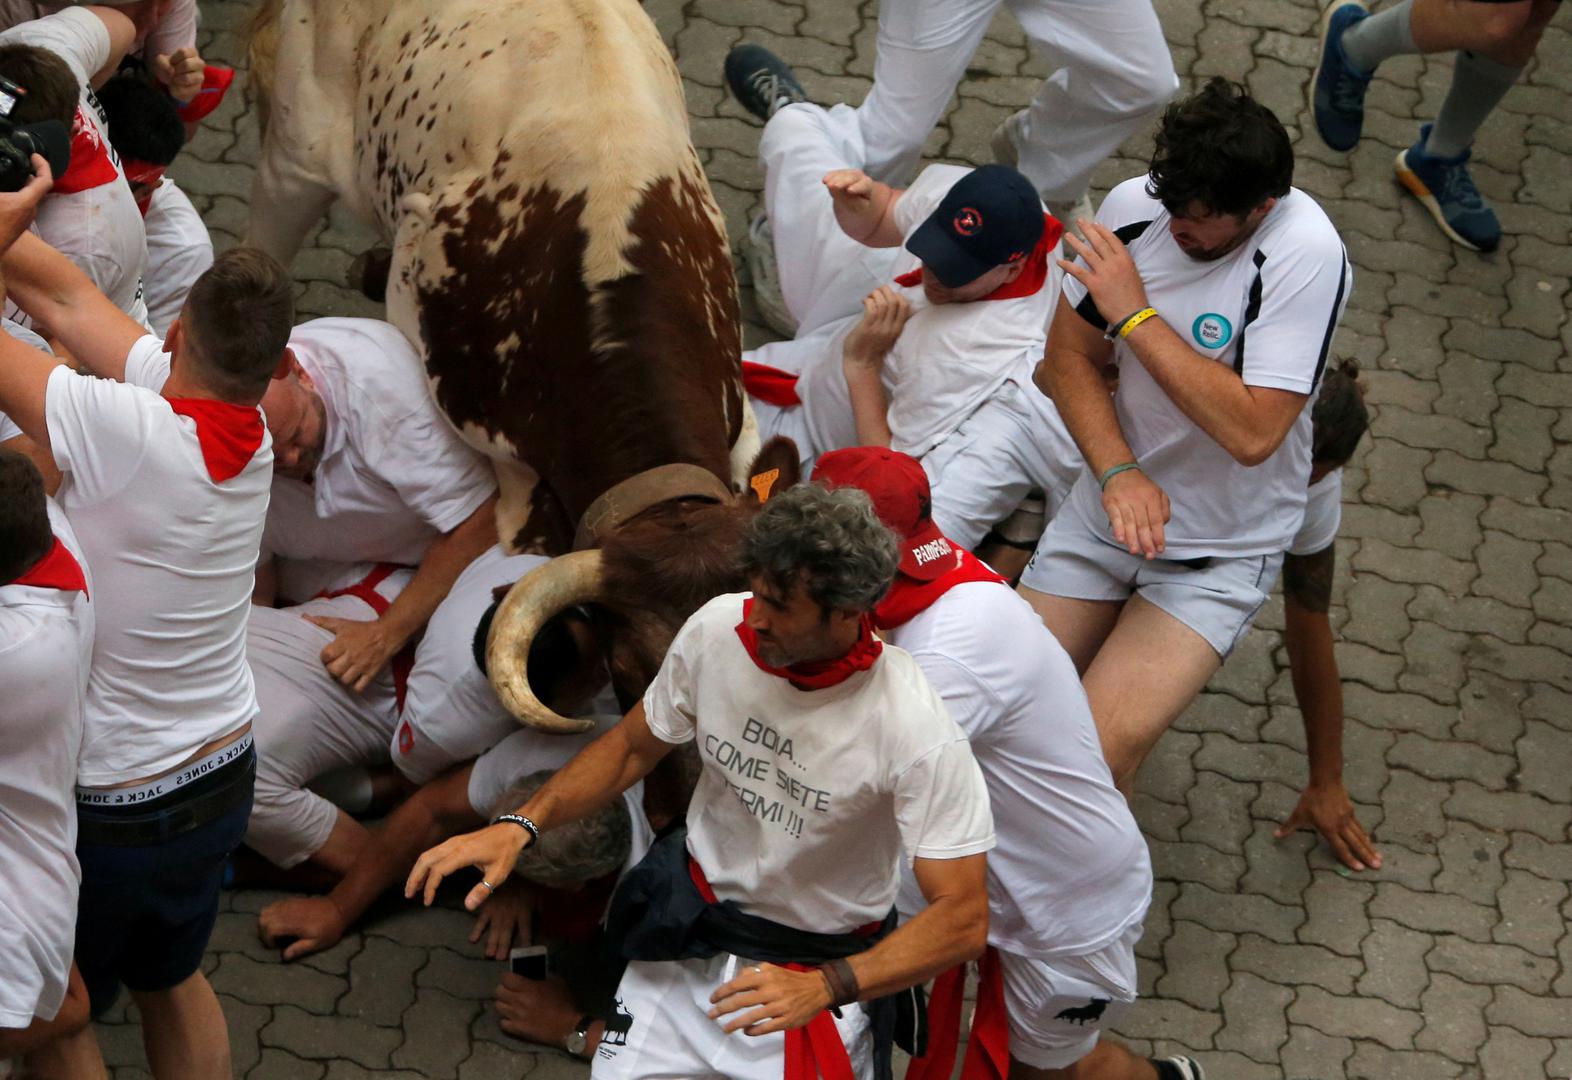 Pet osoba ozlijeđeno je u prvoj utrci s bikovima na glasovitom festivalu u španjolskom gradu Pamploni, javlja u nedjelju RTVE, citirajući predstavnika bolnice.
